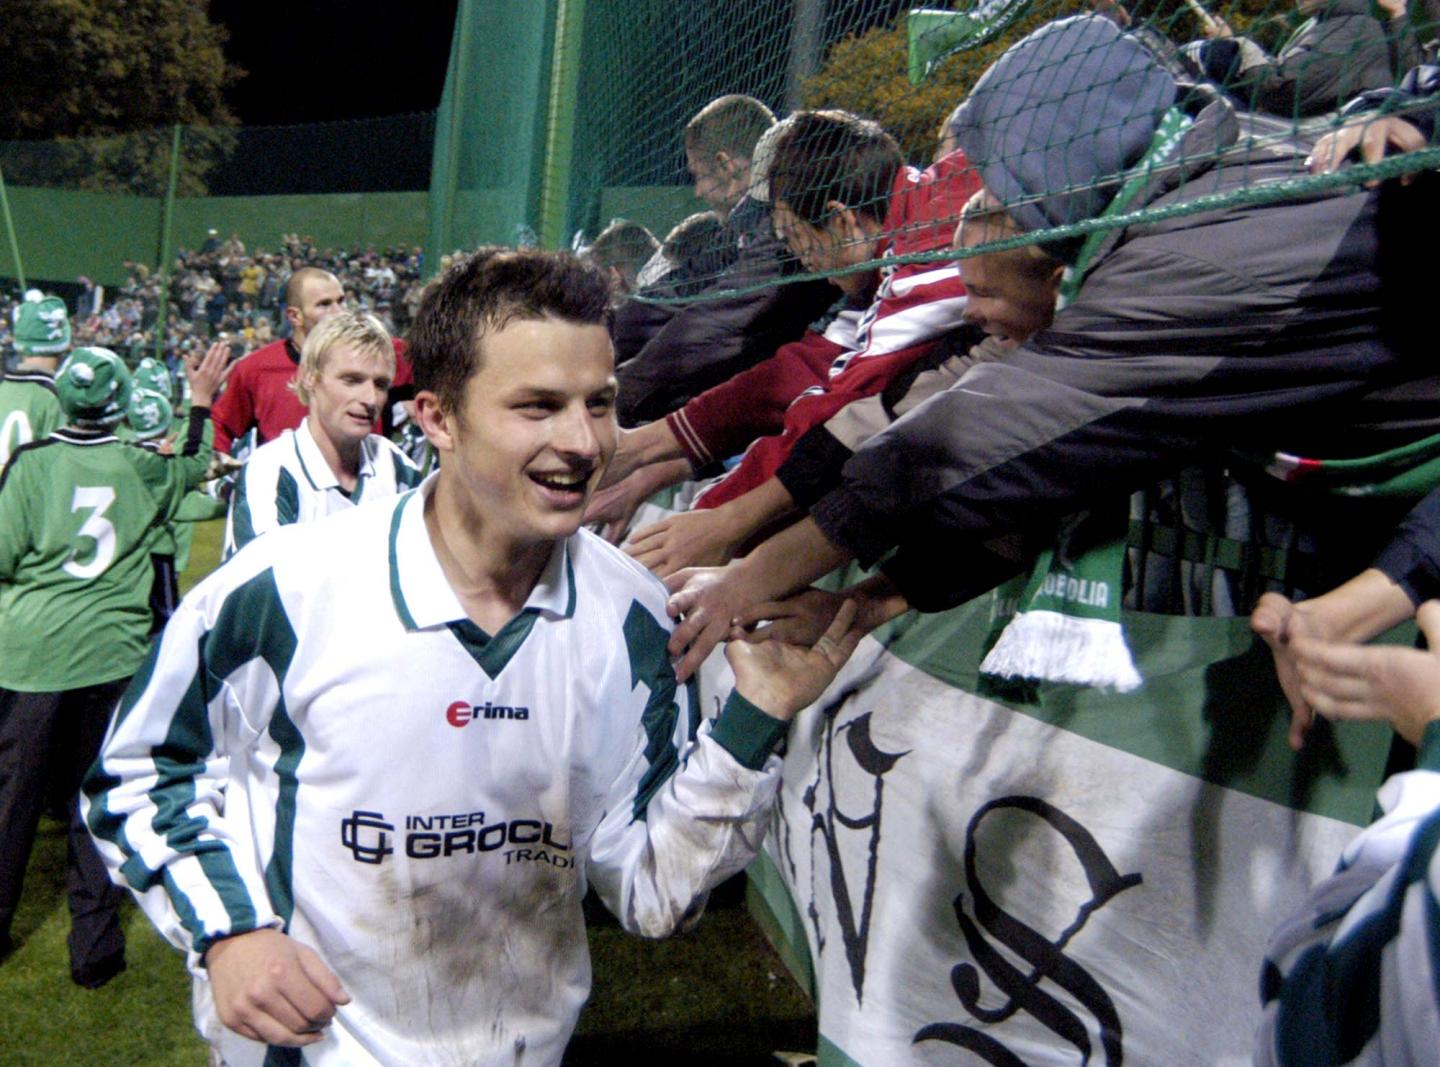 Andrzej Niedzielan podczas meczu Groclin Dyskobolia Grodzisk Wielkopolski - Hertha Berlin 1:0 (15.10.2003)